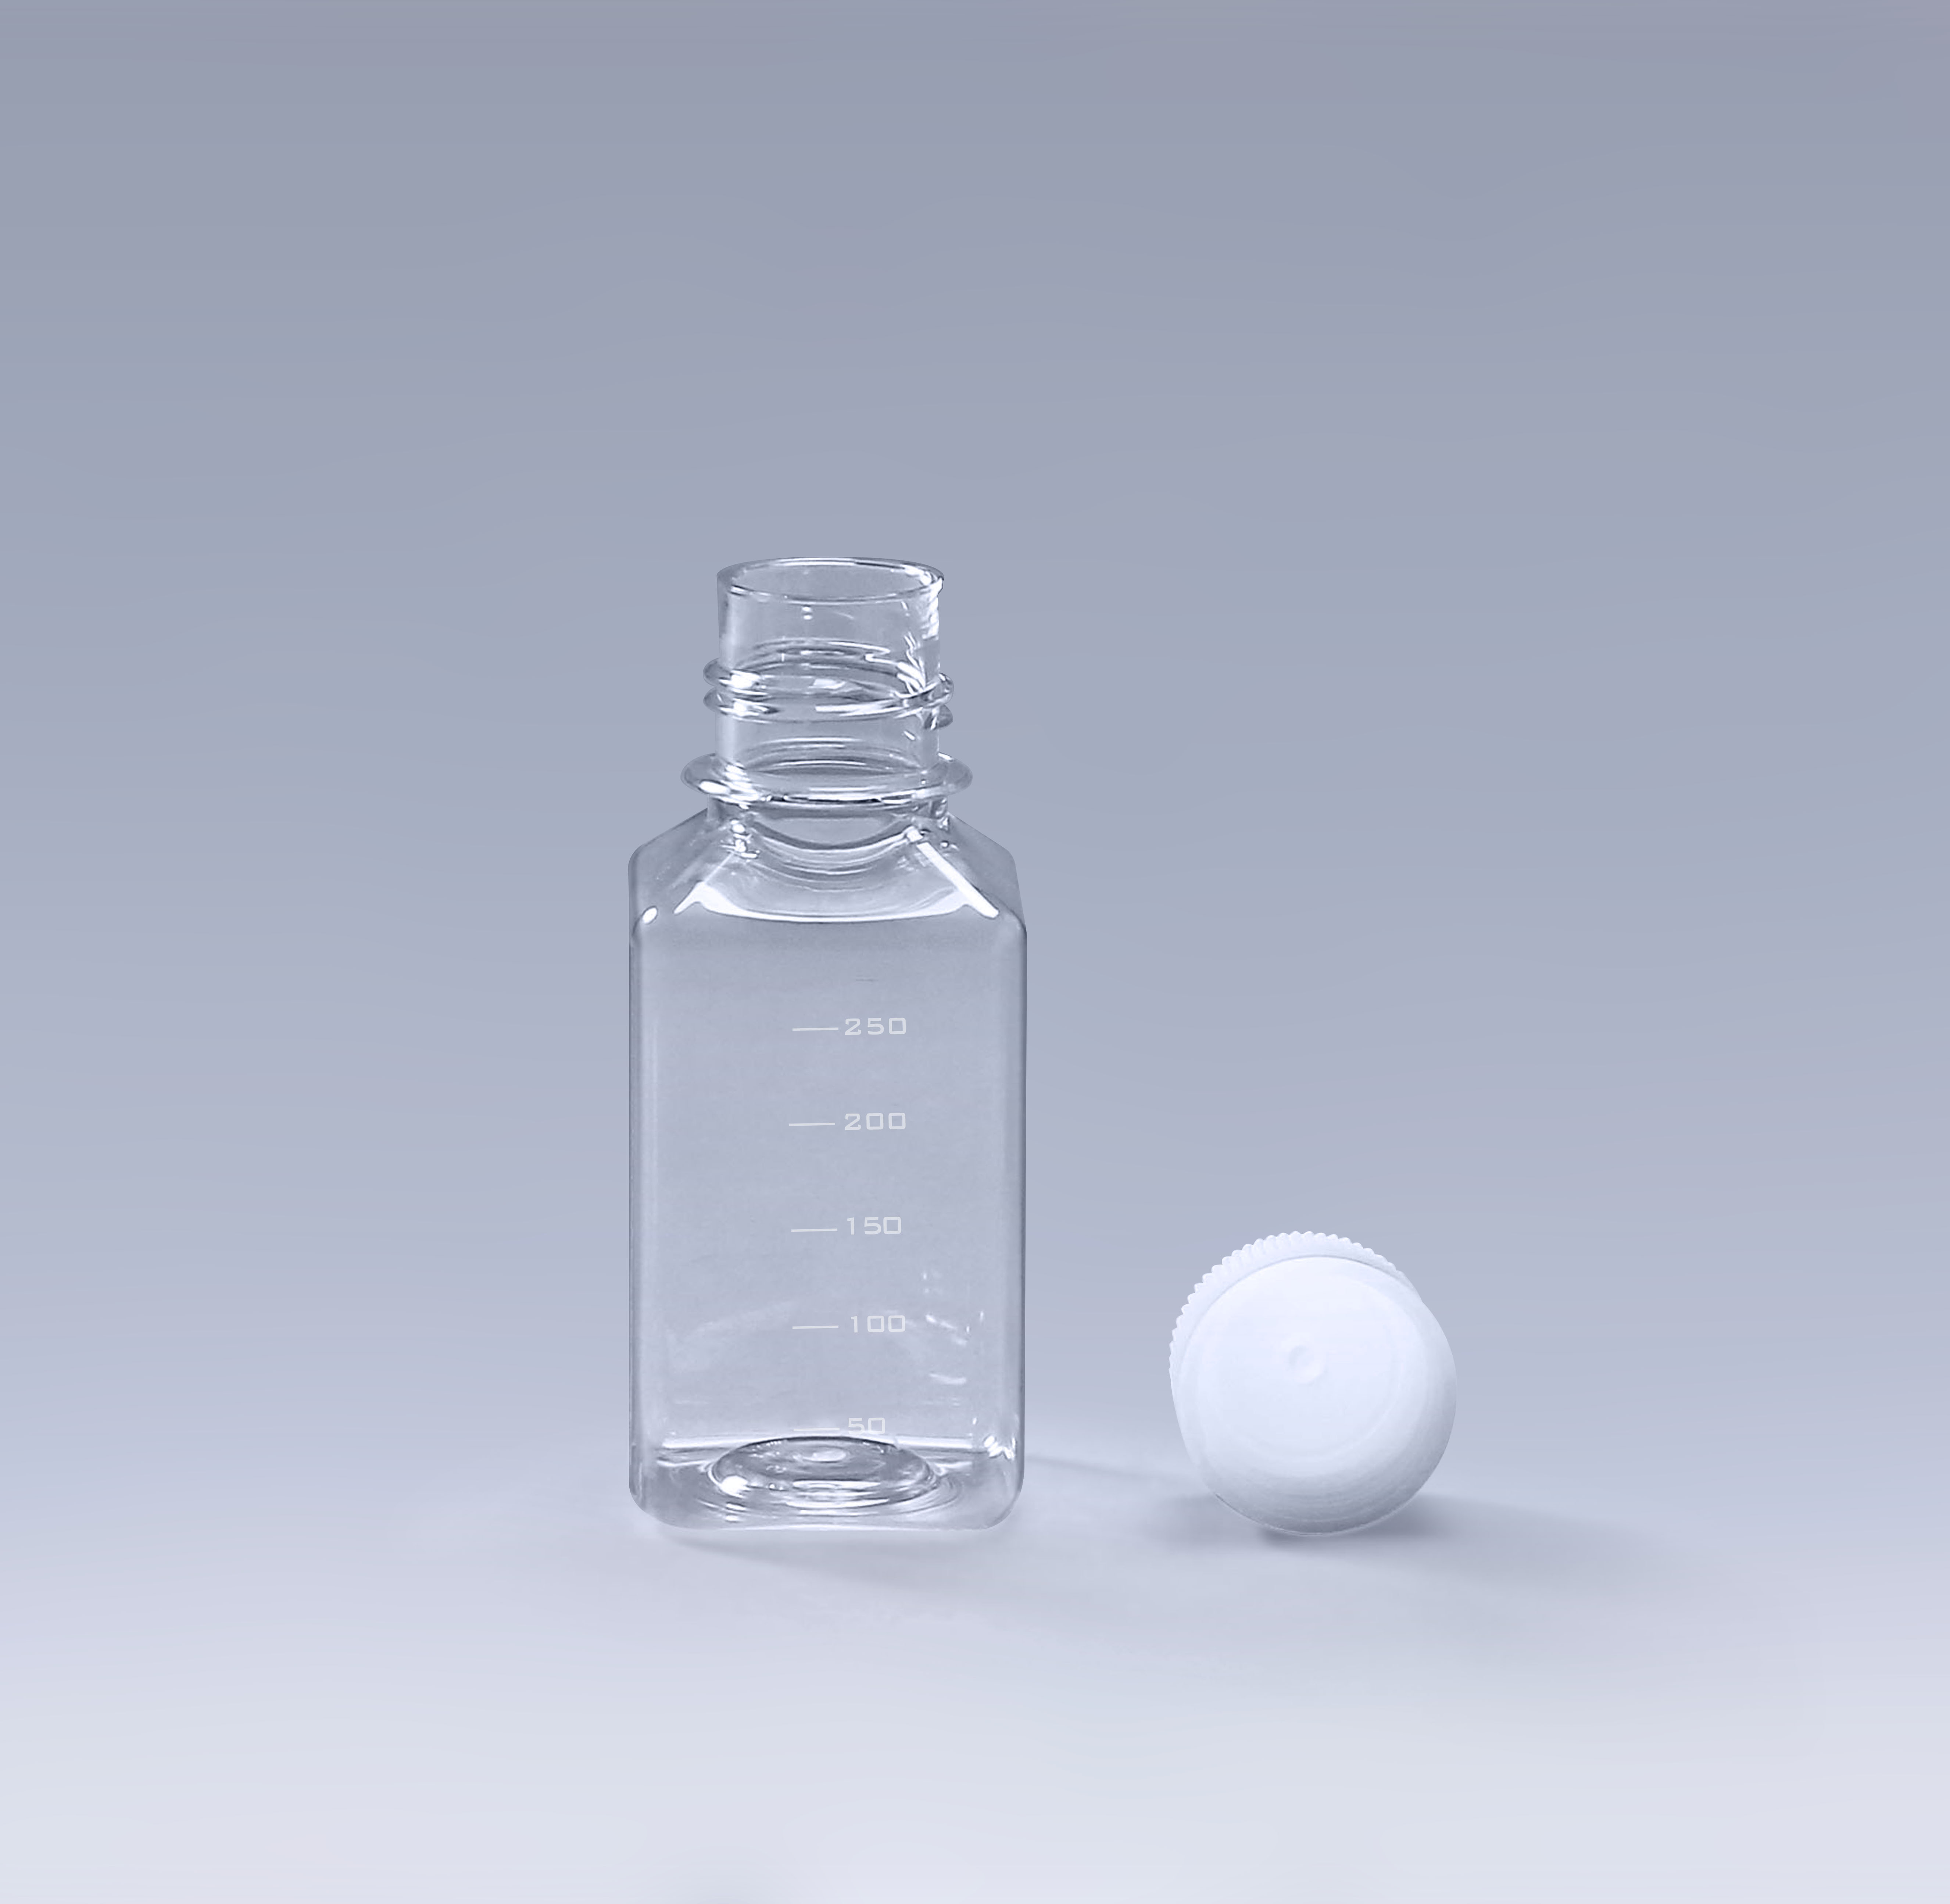 塑料材质的血清培养基瓶成为趋势